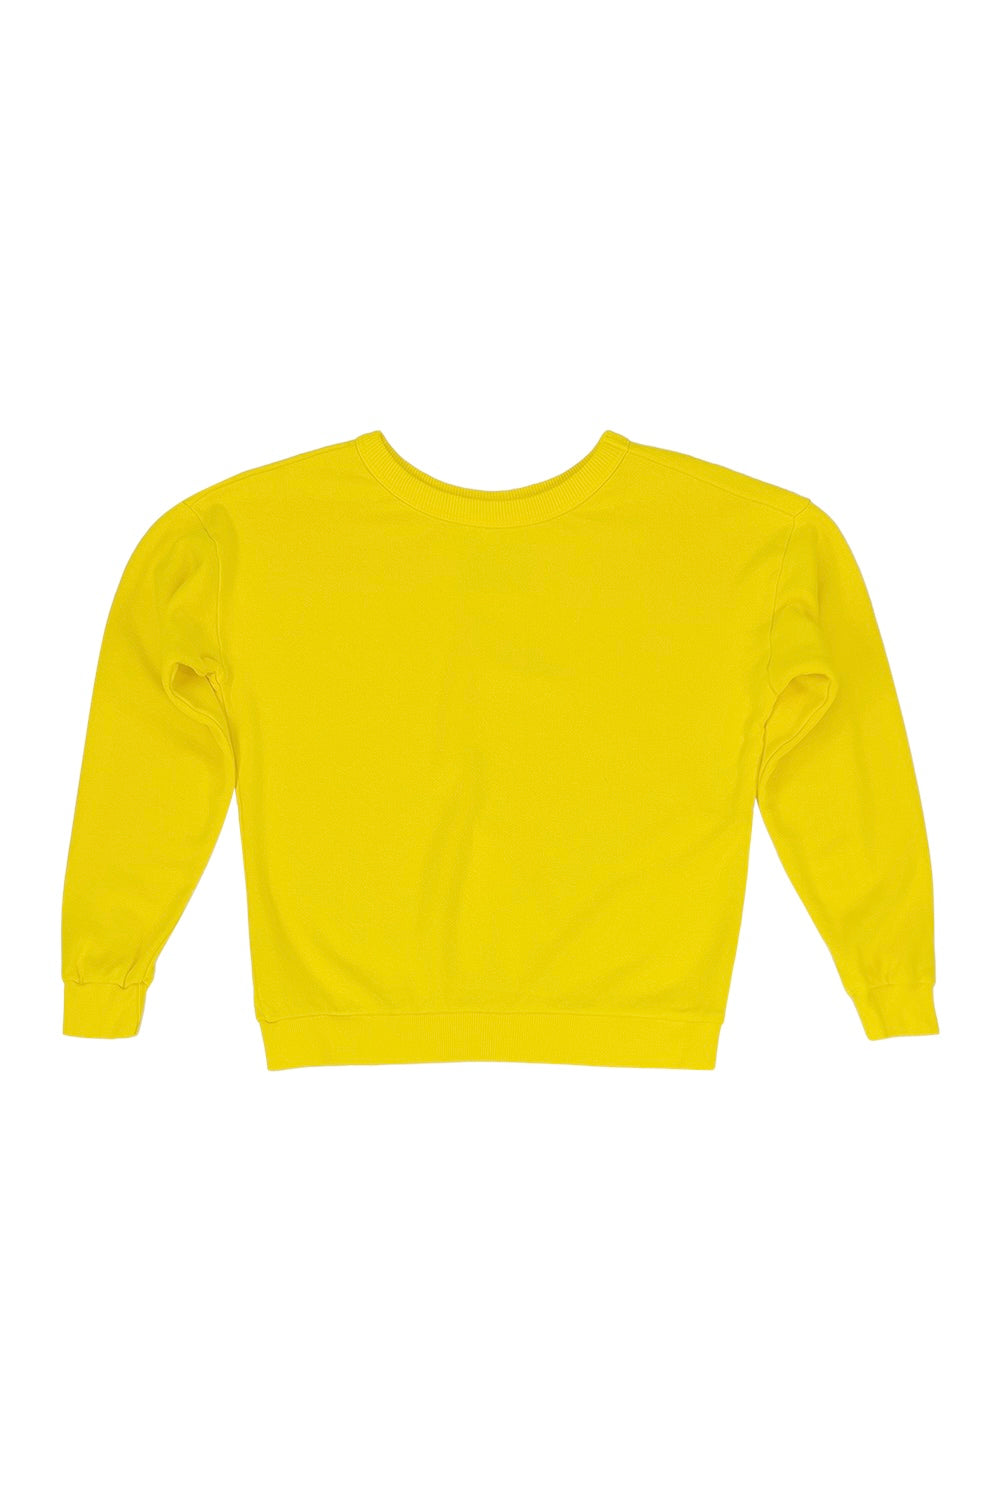 Crop Top Fleece Crew Neck Sweatshirt for Women – Global Blank